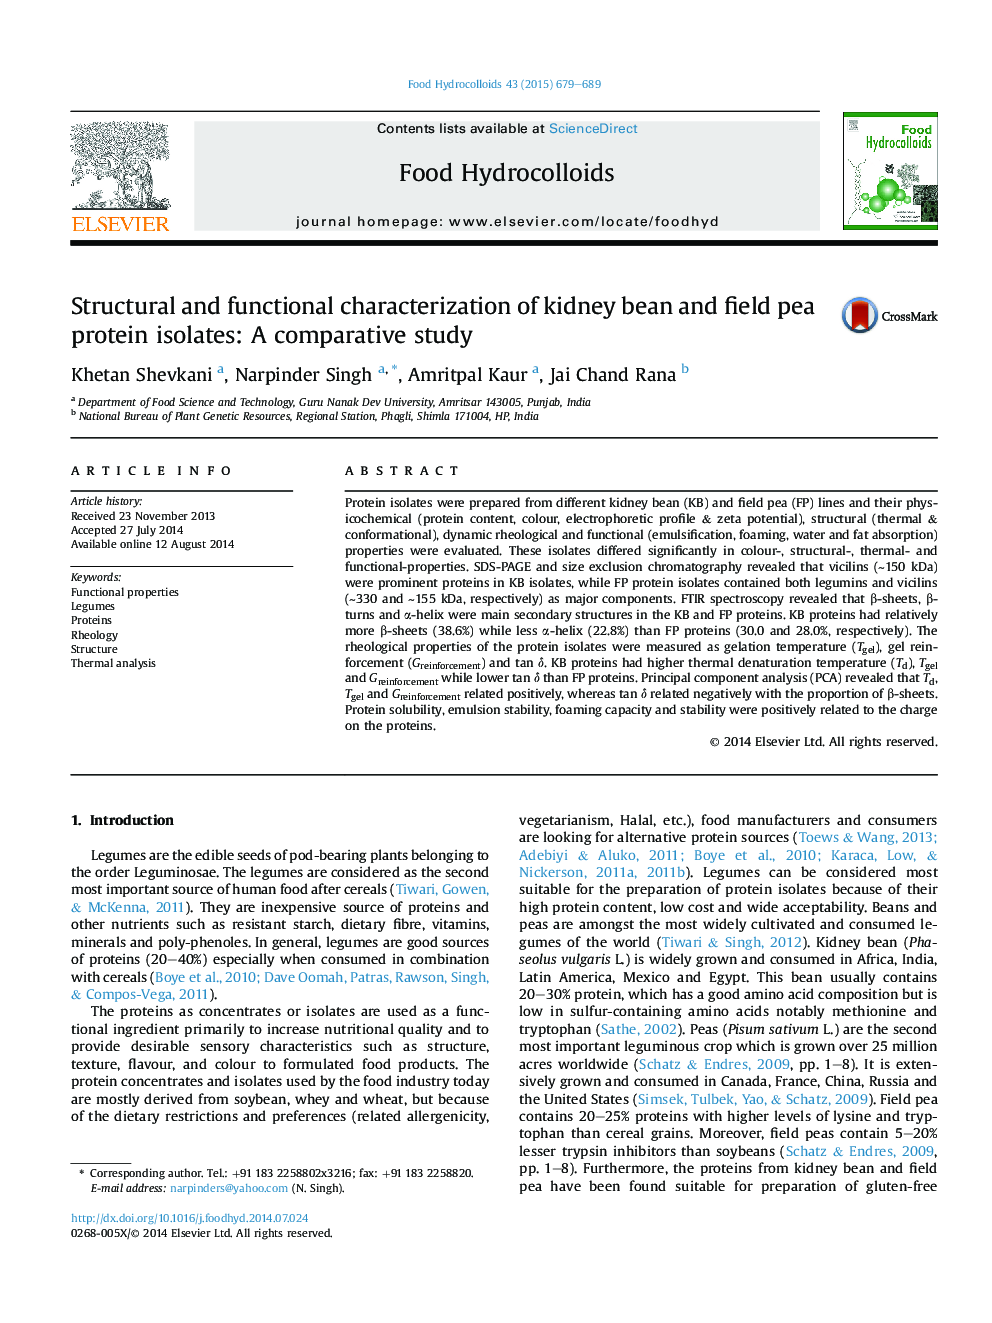 بررسی ویژگی های ساختاری و عملکردی پروتئین های پروتئینی نخود کریو و کلیه: یک مطالعه مقایسه ای 